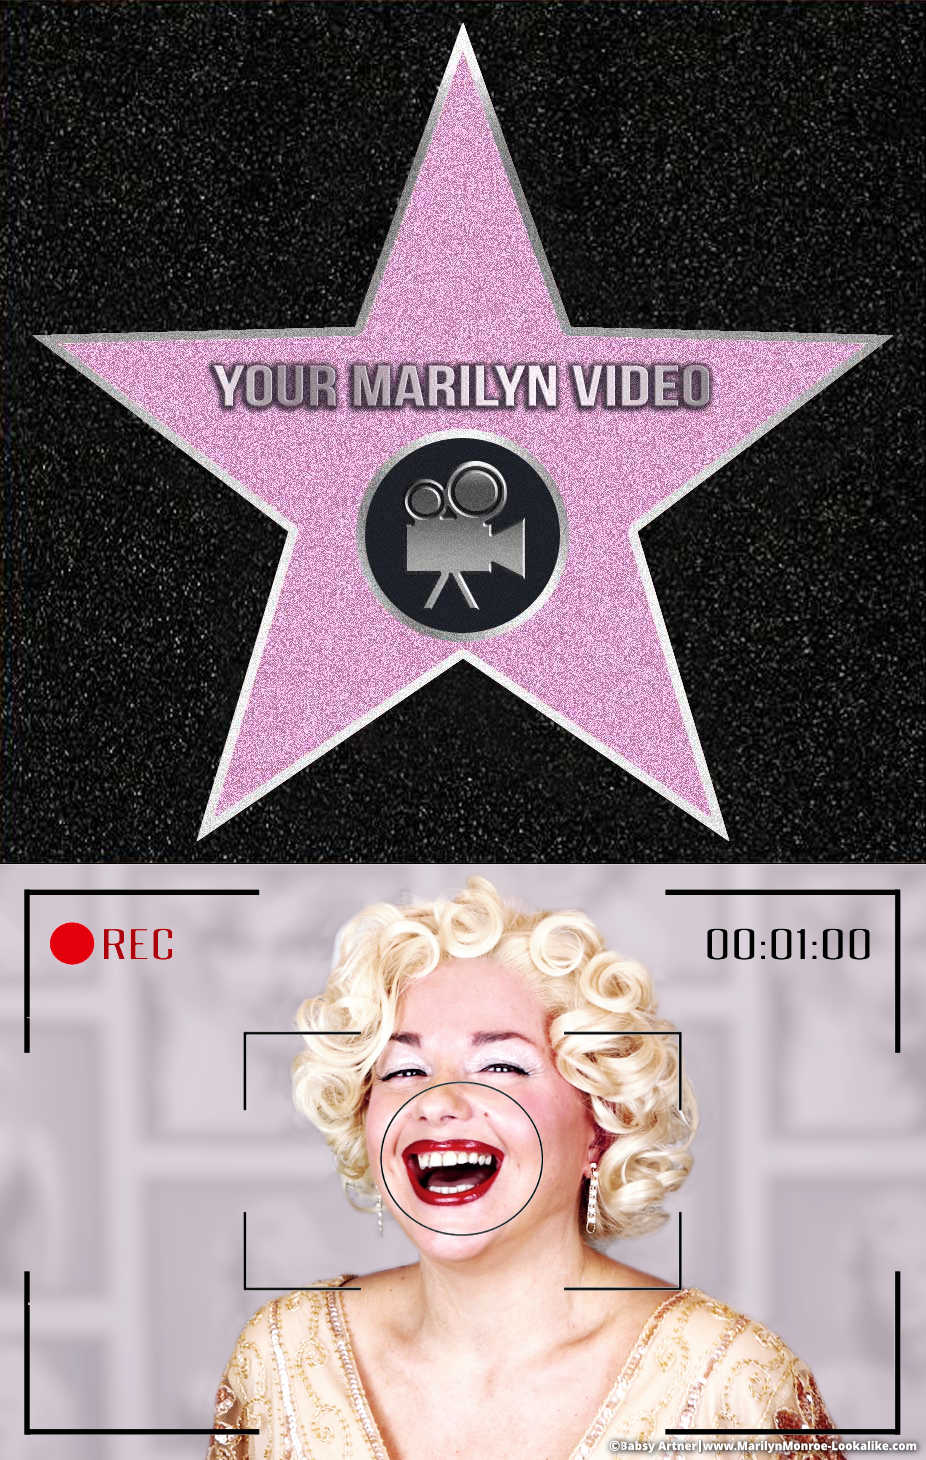 Personalized video from Babsy Artner as Marilyn Monroe